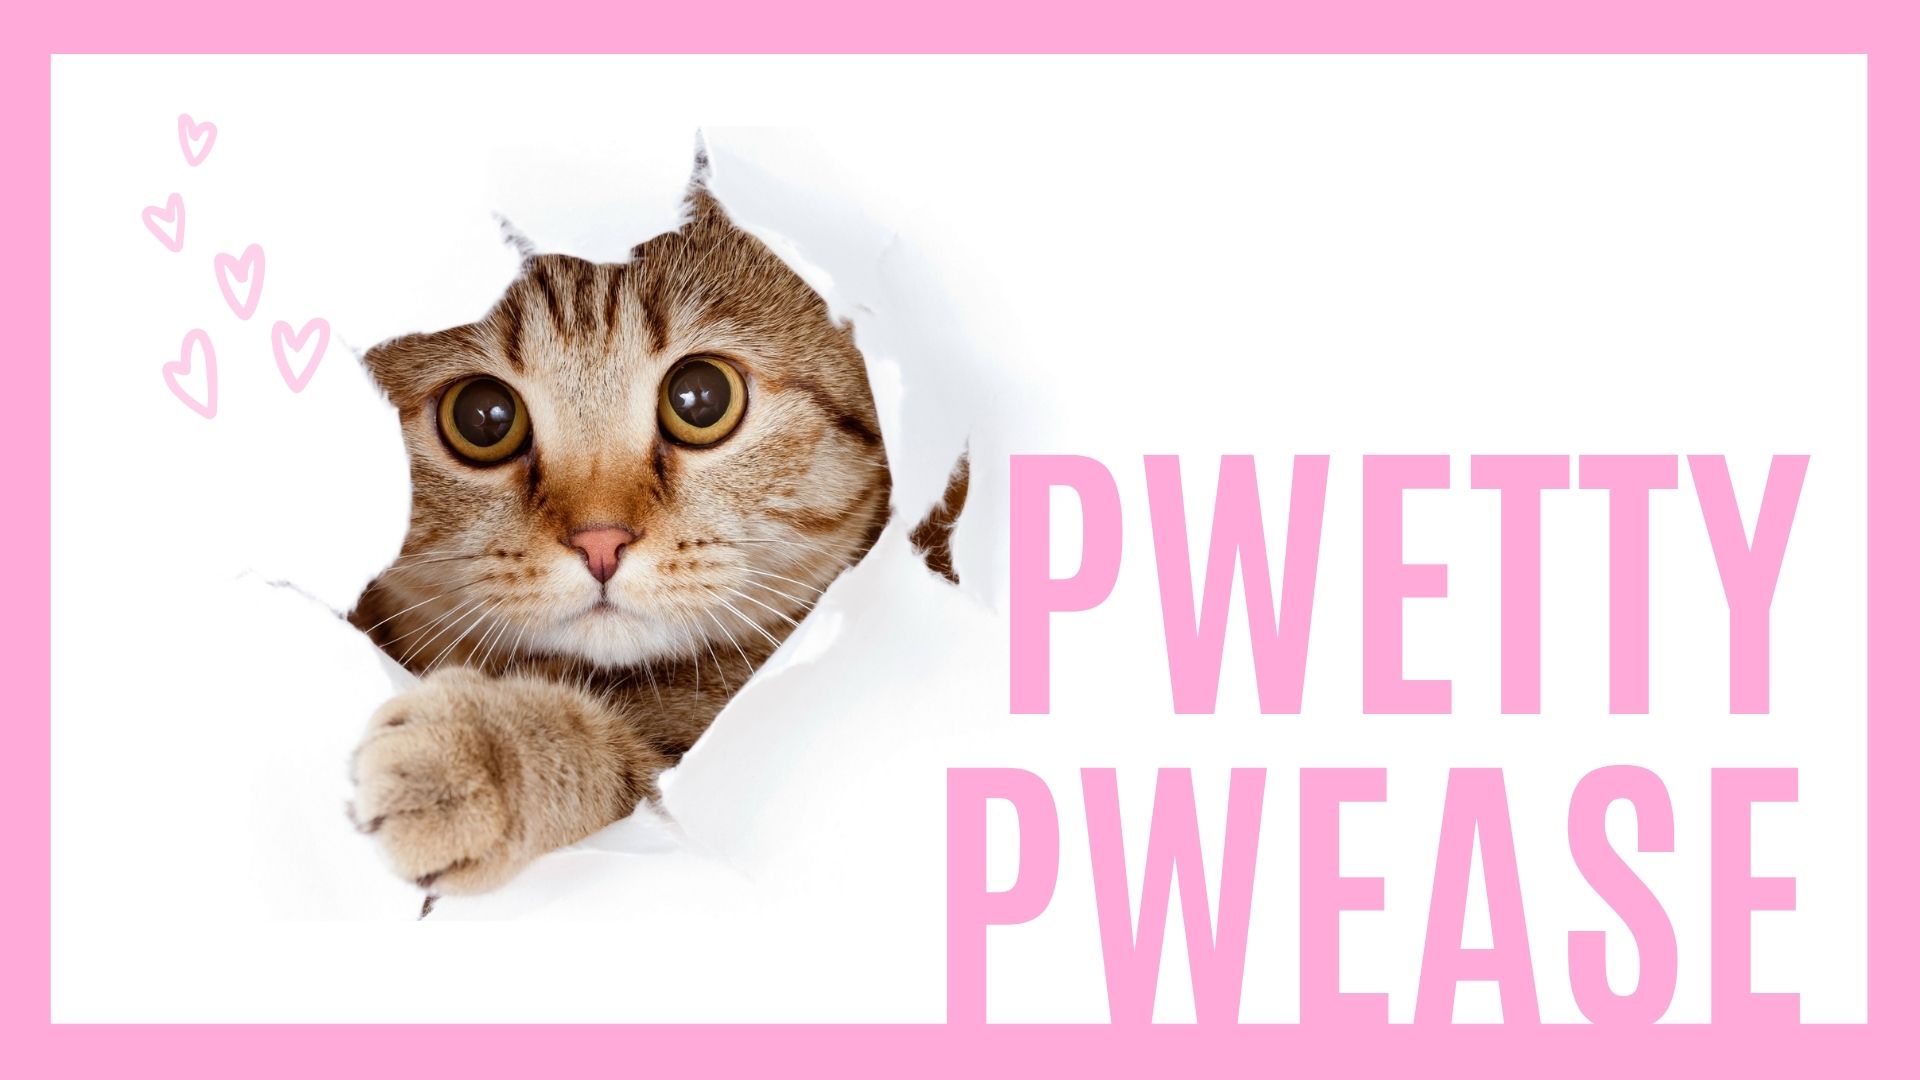 猫が壁から出てくるアイキャッチ画像。pewtty, pwease, pretty please, 英語, english, 意味